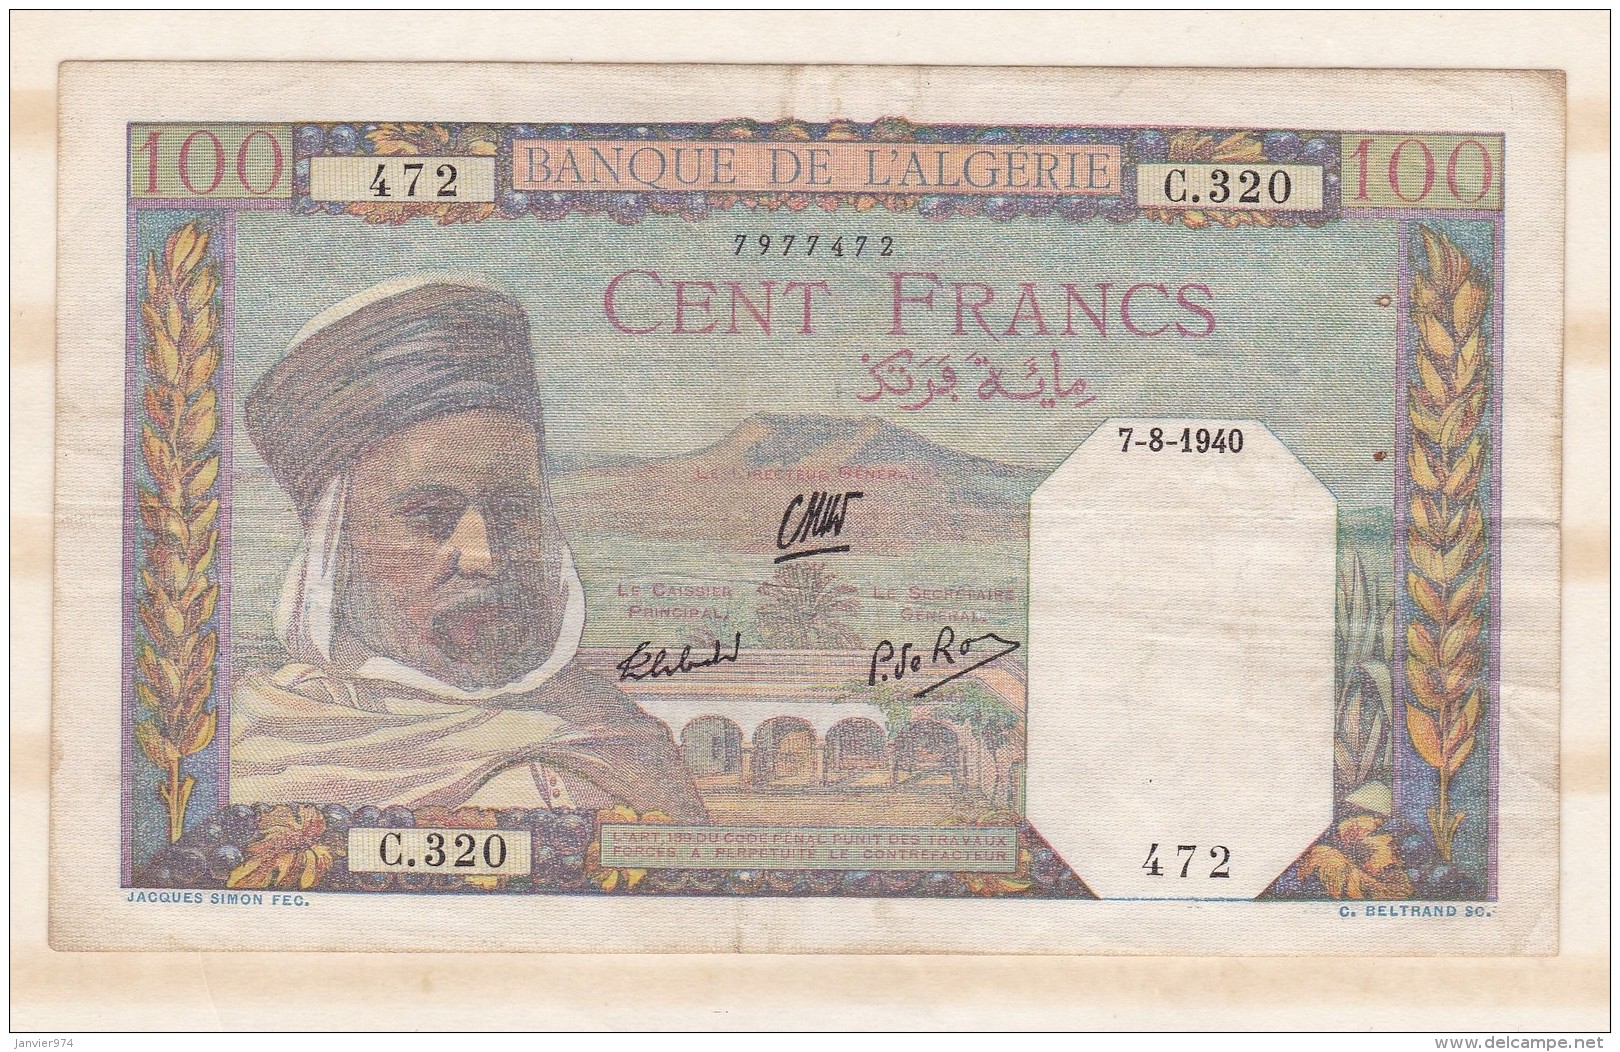 Billet . 100 FRANCS 27 - 8  - 1940, Alphabet C.320  N° 472 - Algerije